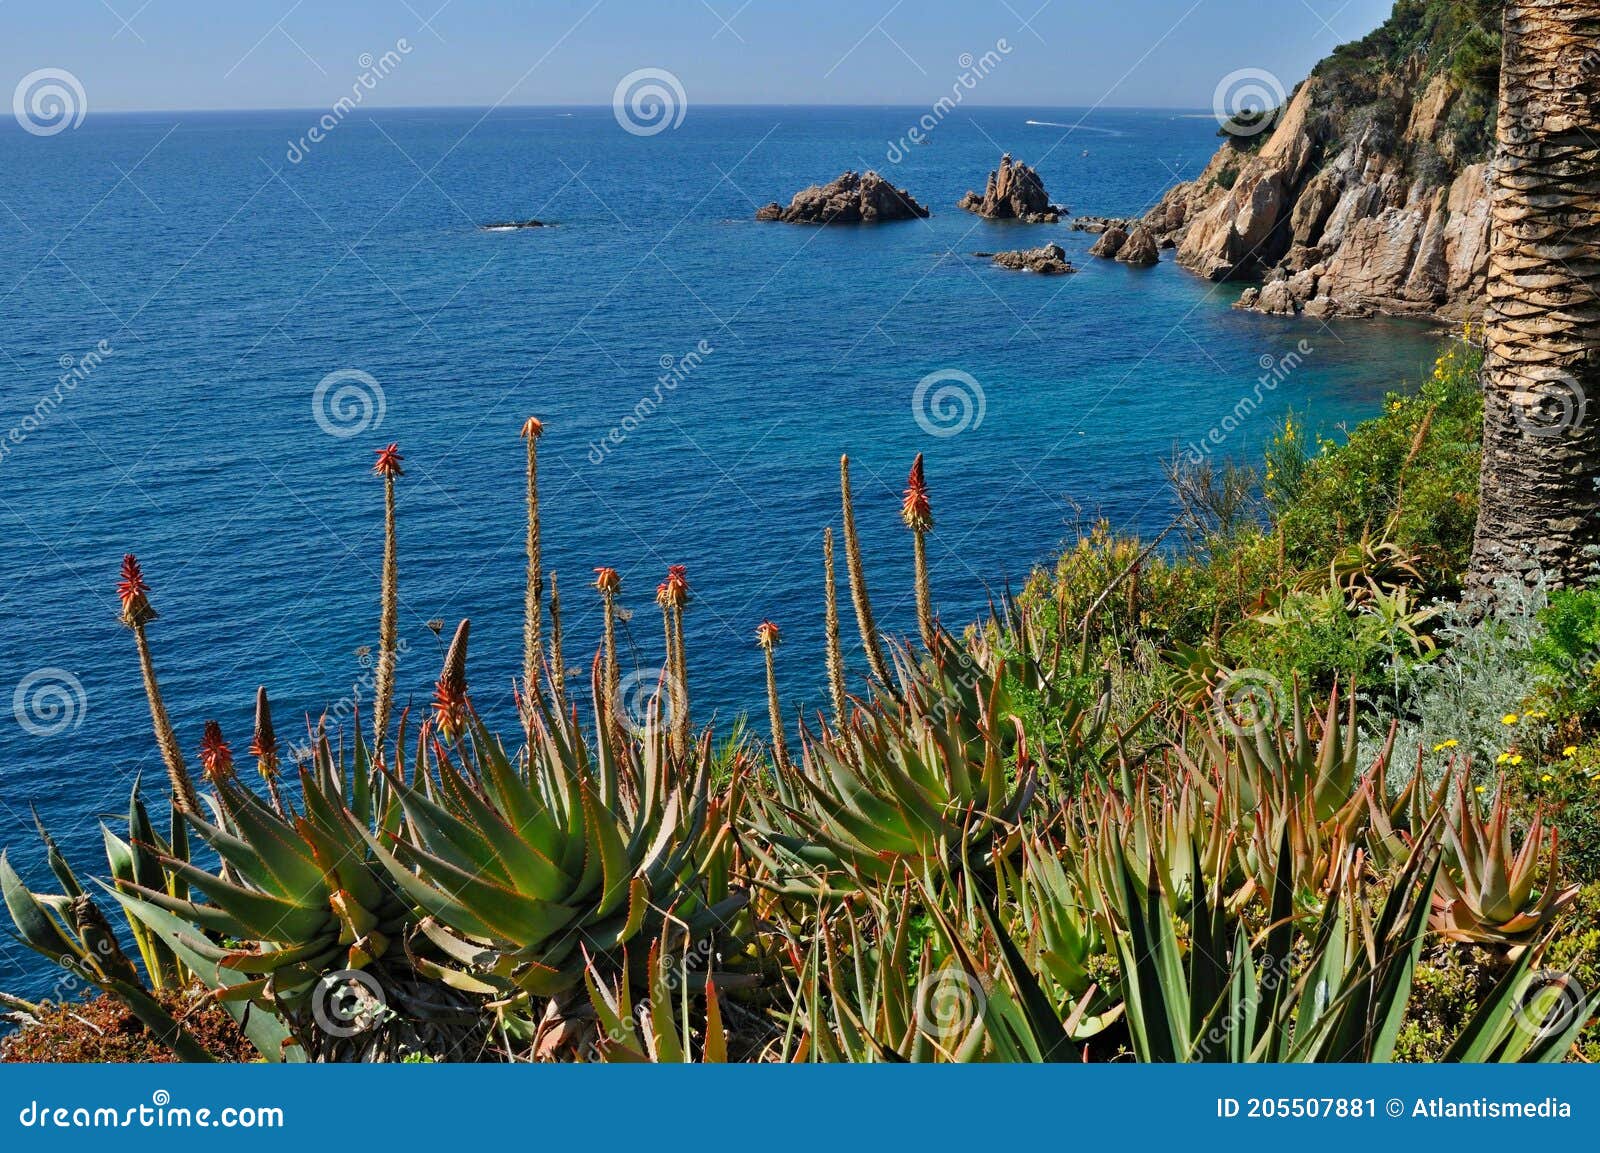 costa brava - mediterranien coastline in spain